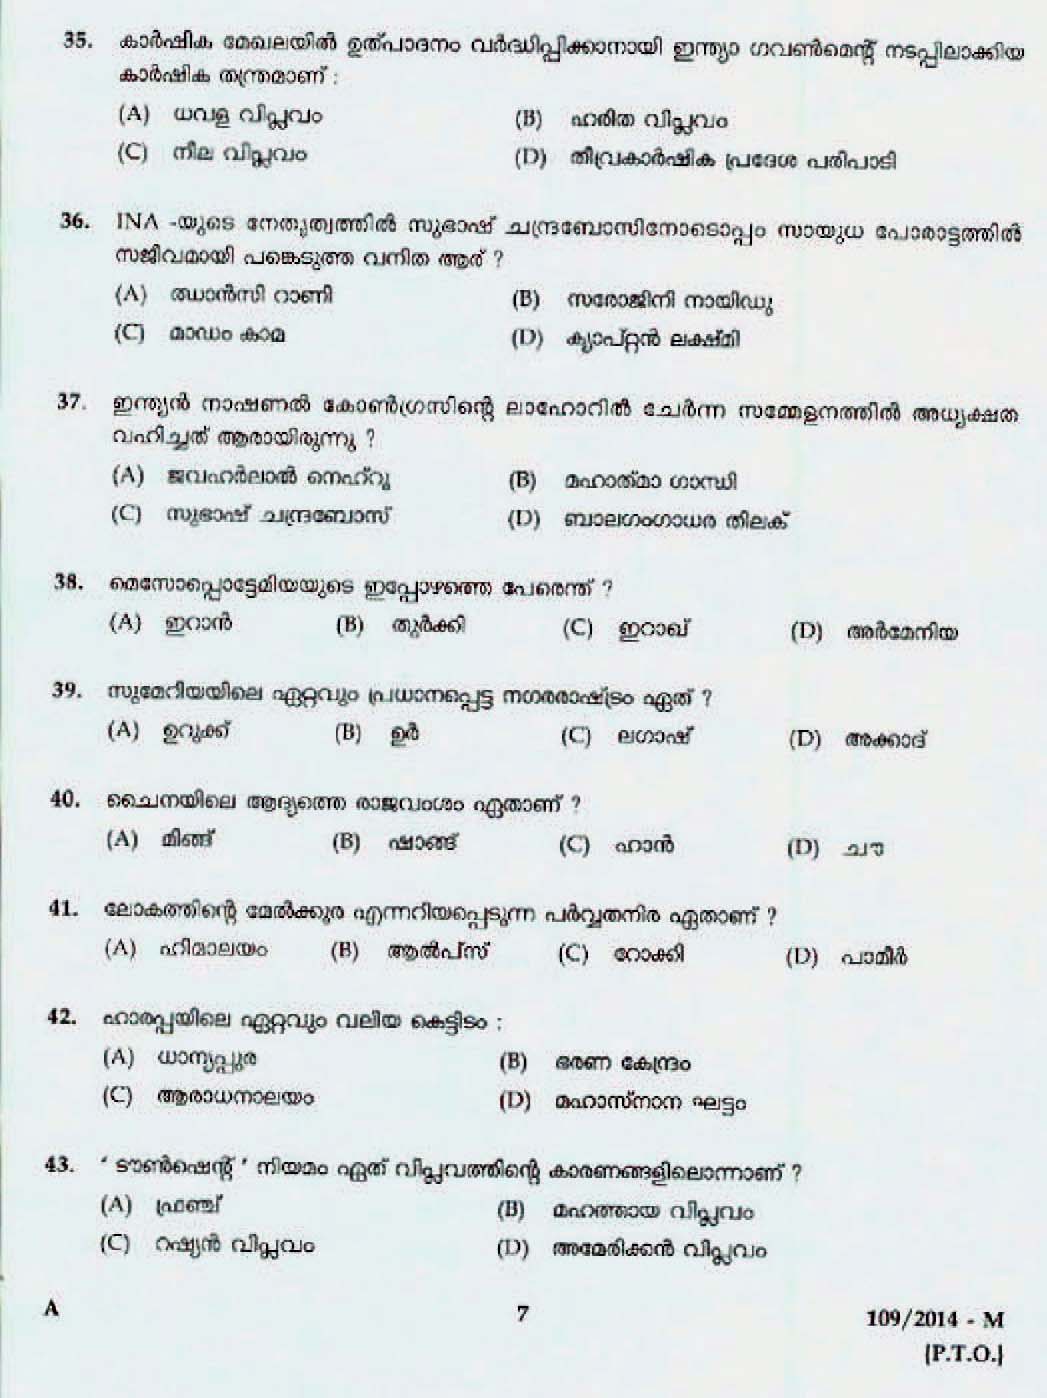 Kerala Last Grade Servants Exam 2014 Question Paper Code 1092014 M 5